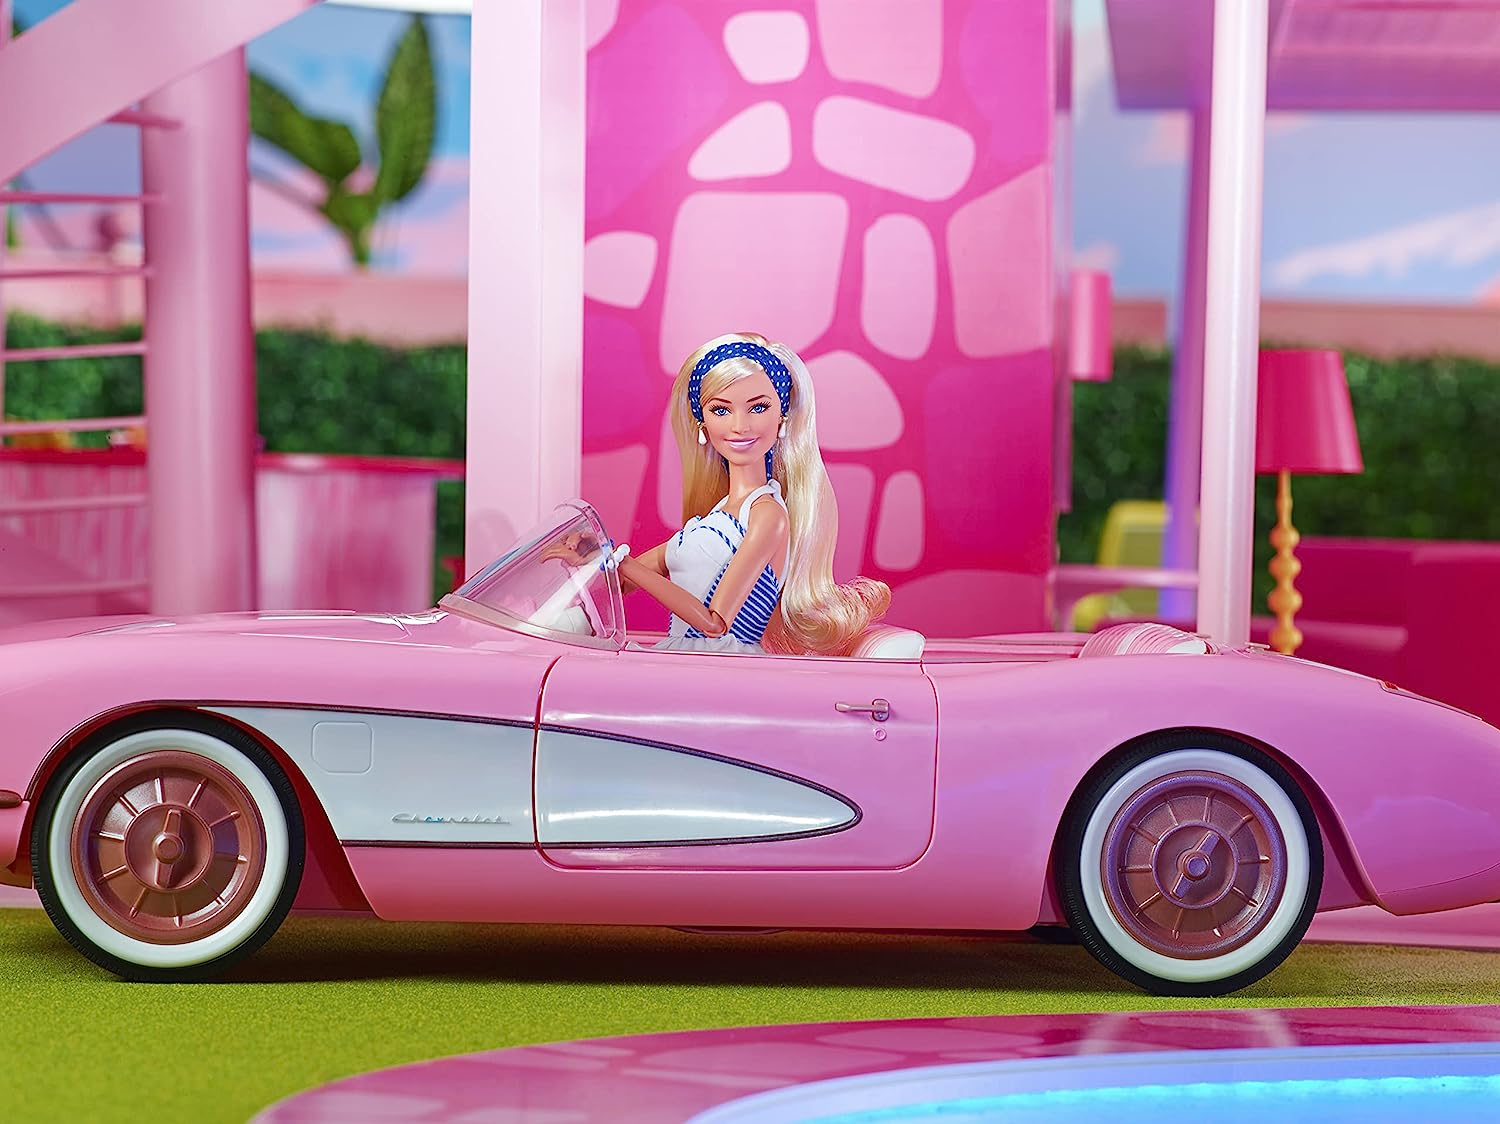 Barbie Armário de Roupas do Filme